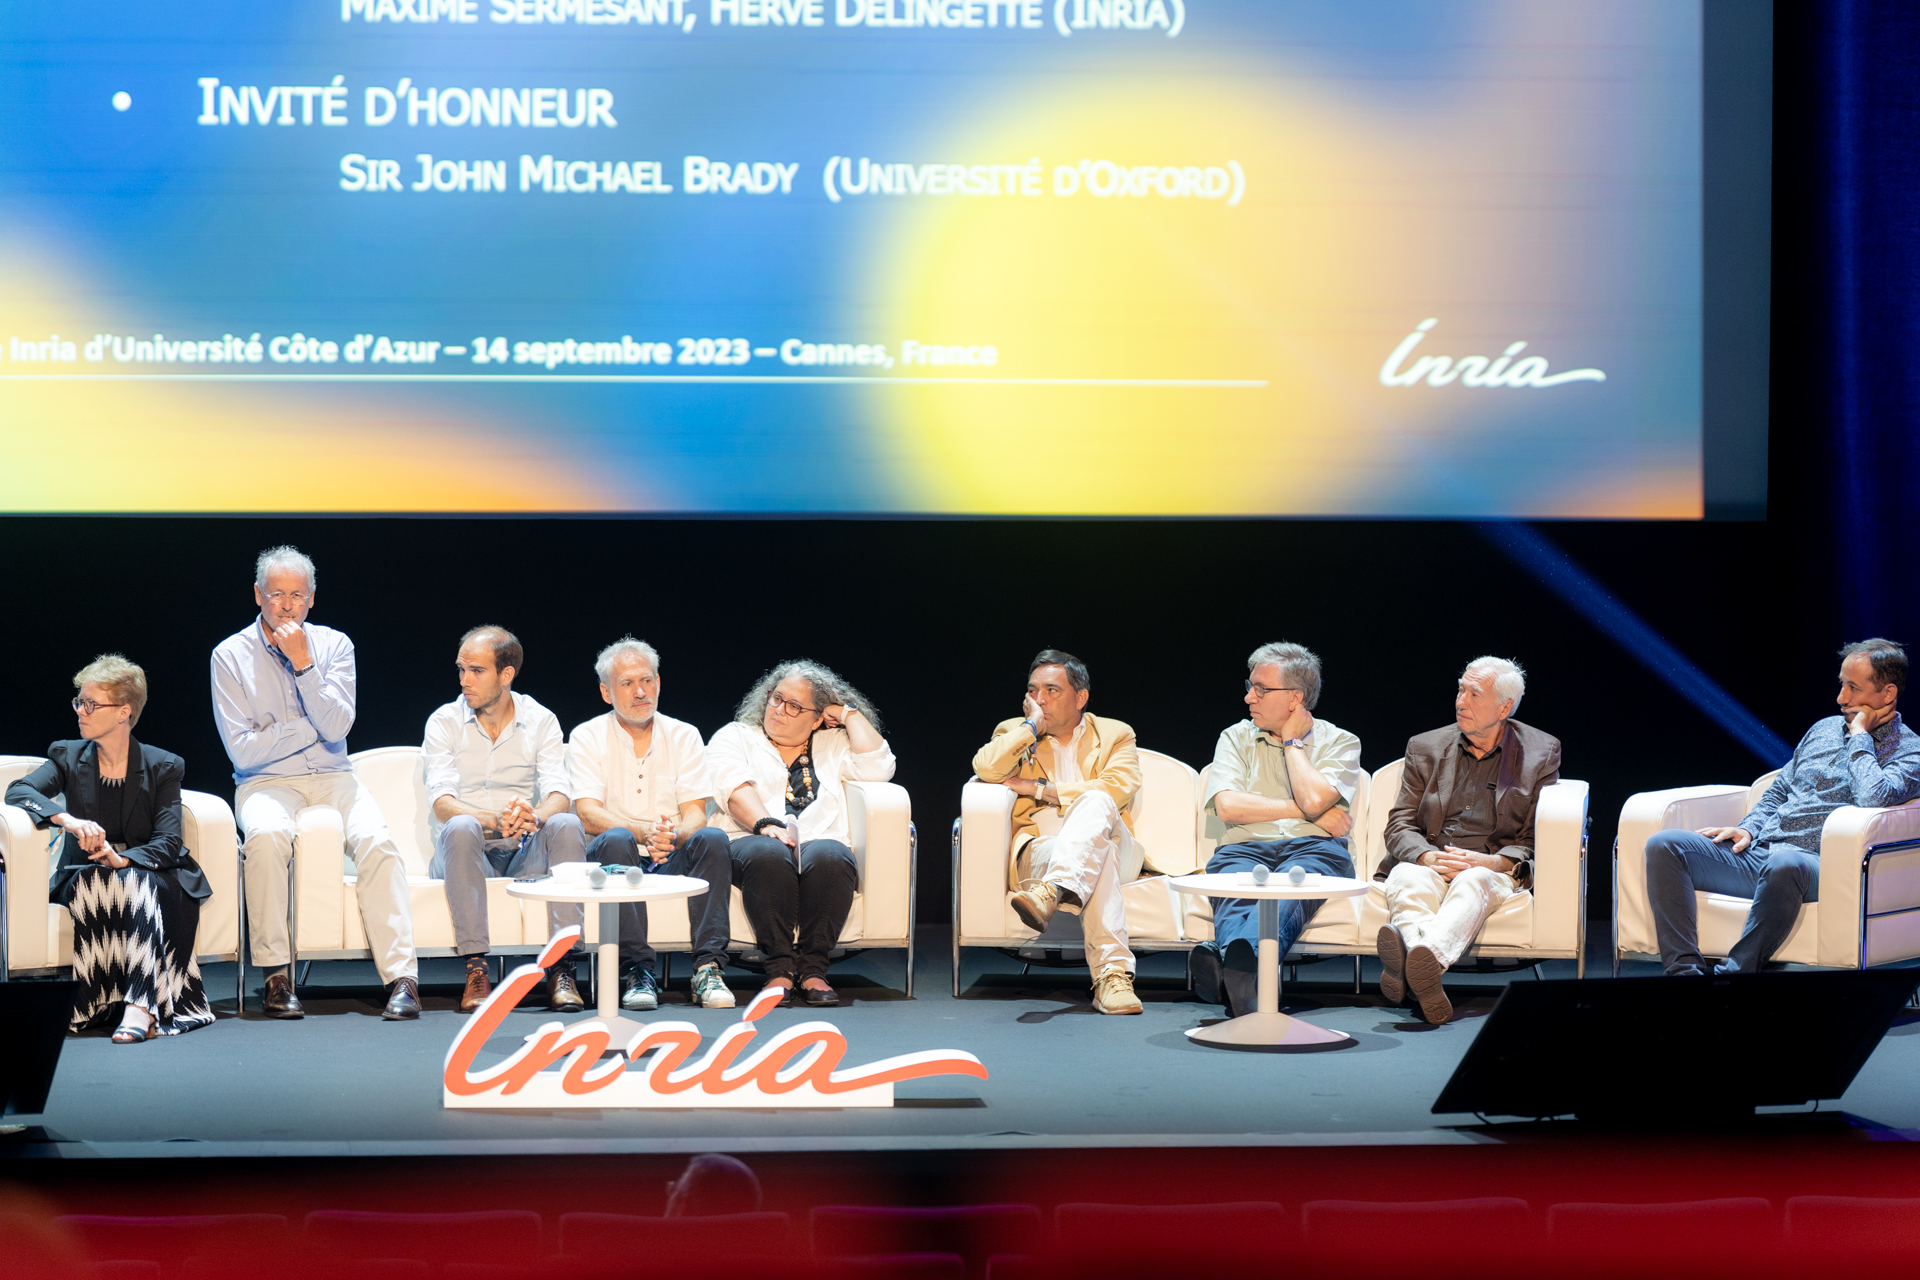 40 ans du Centre Inria d'Université Côte d'Azur au Palais des festivals de Cannes - 14 septembre 2023